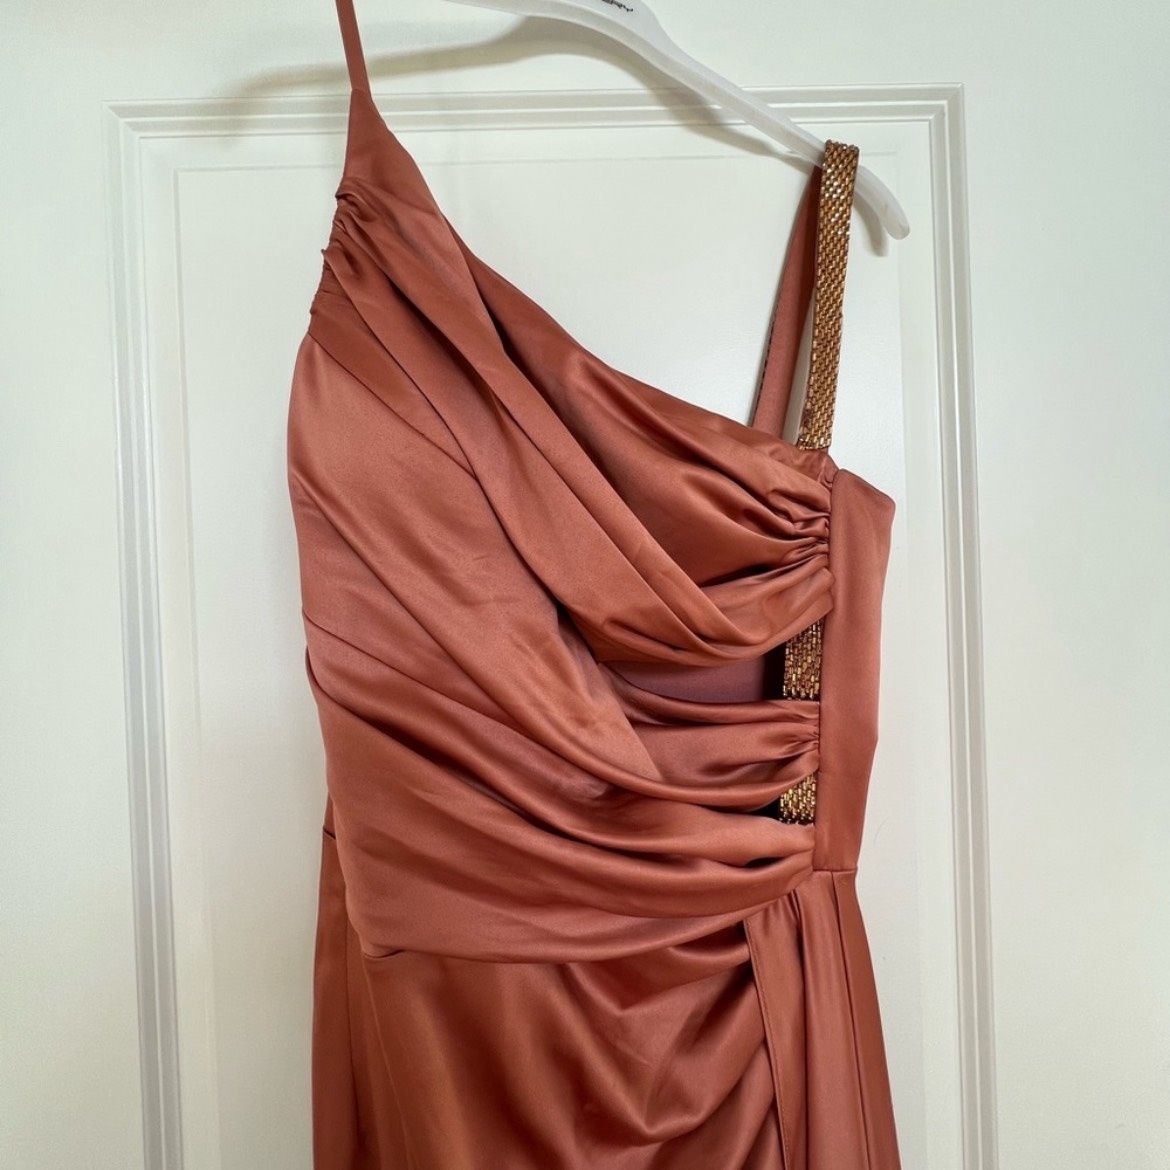 Size 10 Prom One Shoulder Orange Side Slit Dress on Queenly